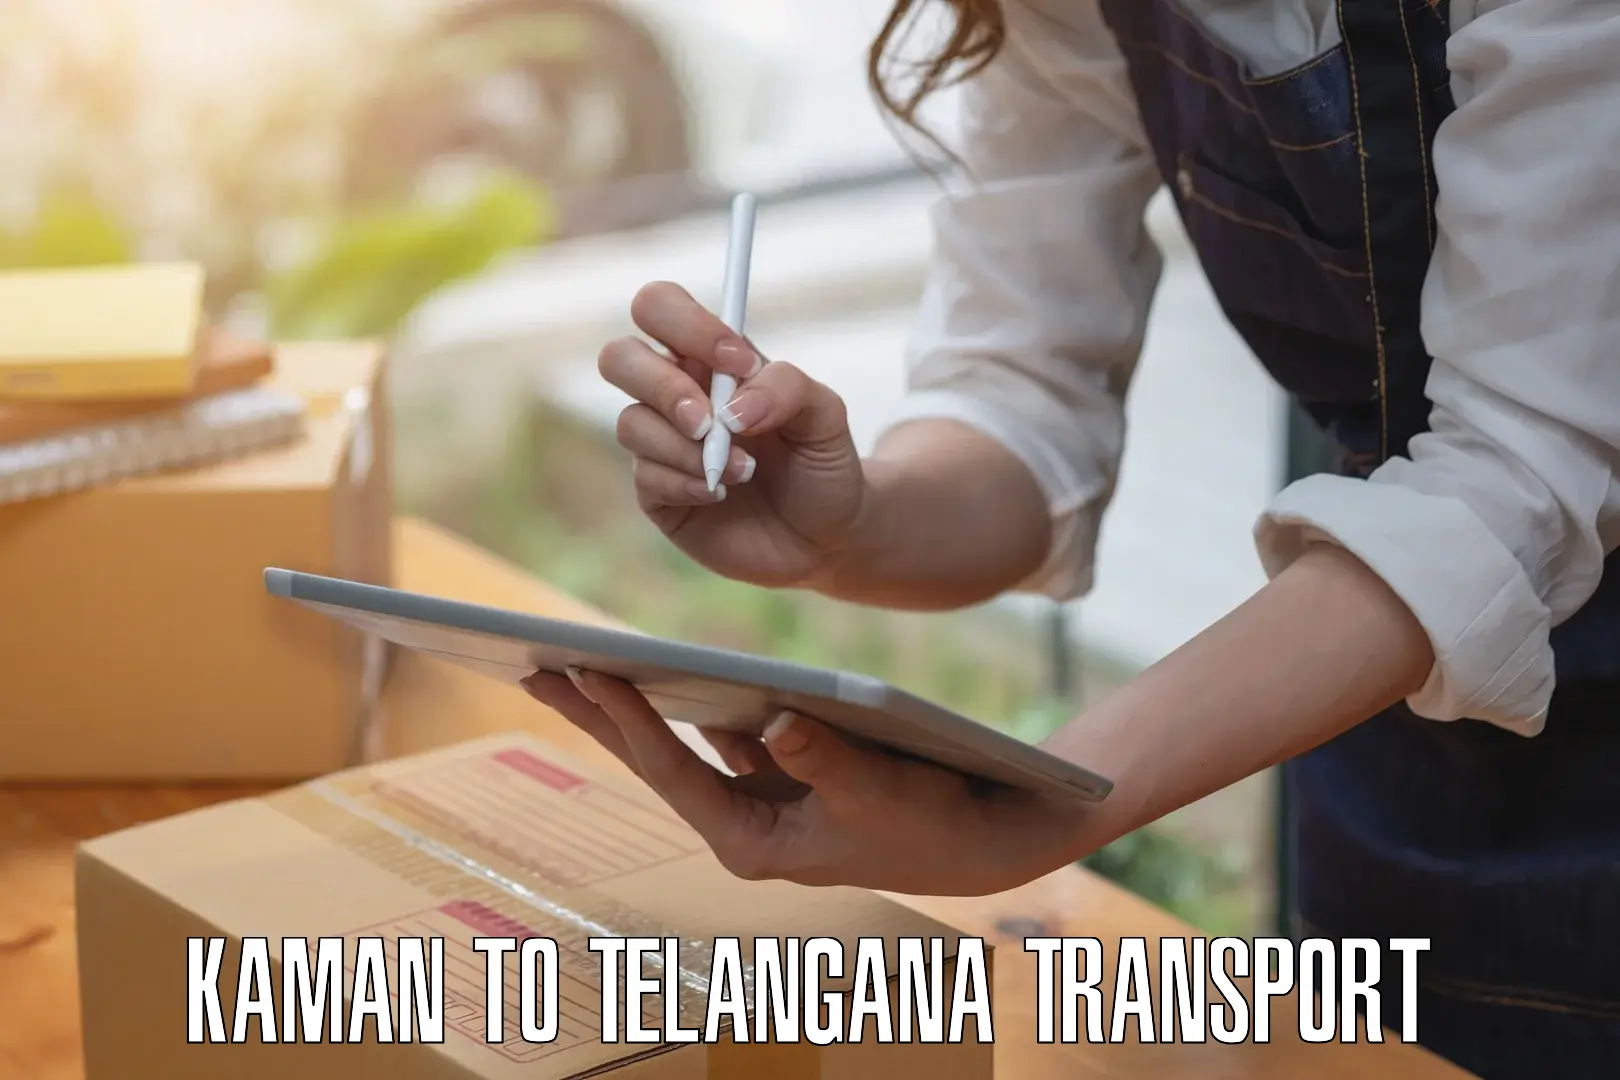 Transport in sharing Kaman to Nirmal